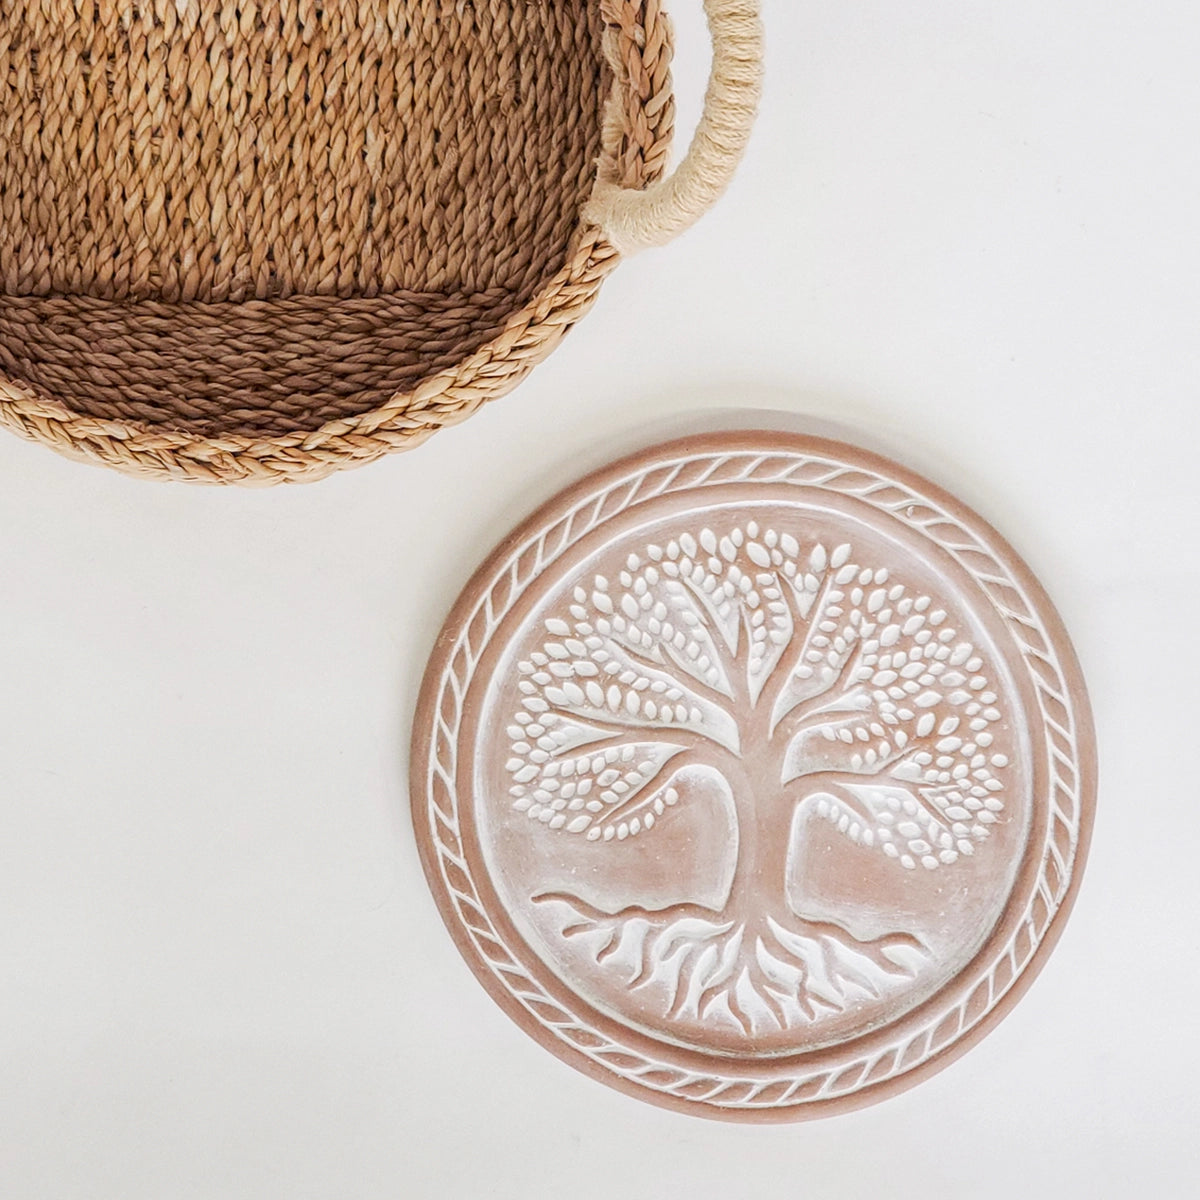 Handmade Bread Warmer & Wicker Basket - Tree of Life